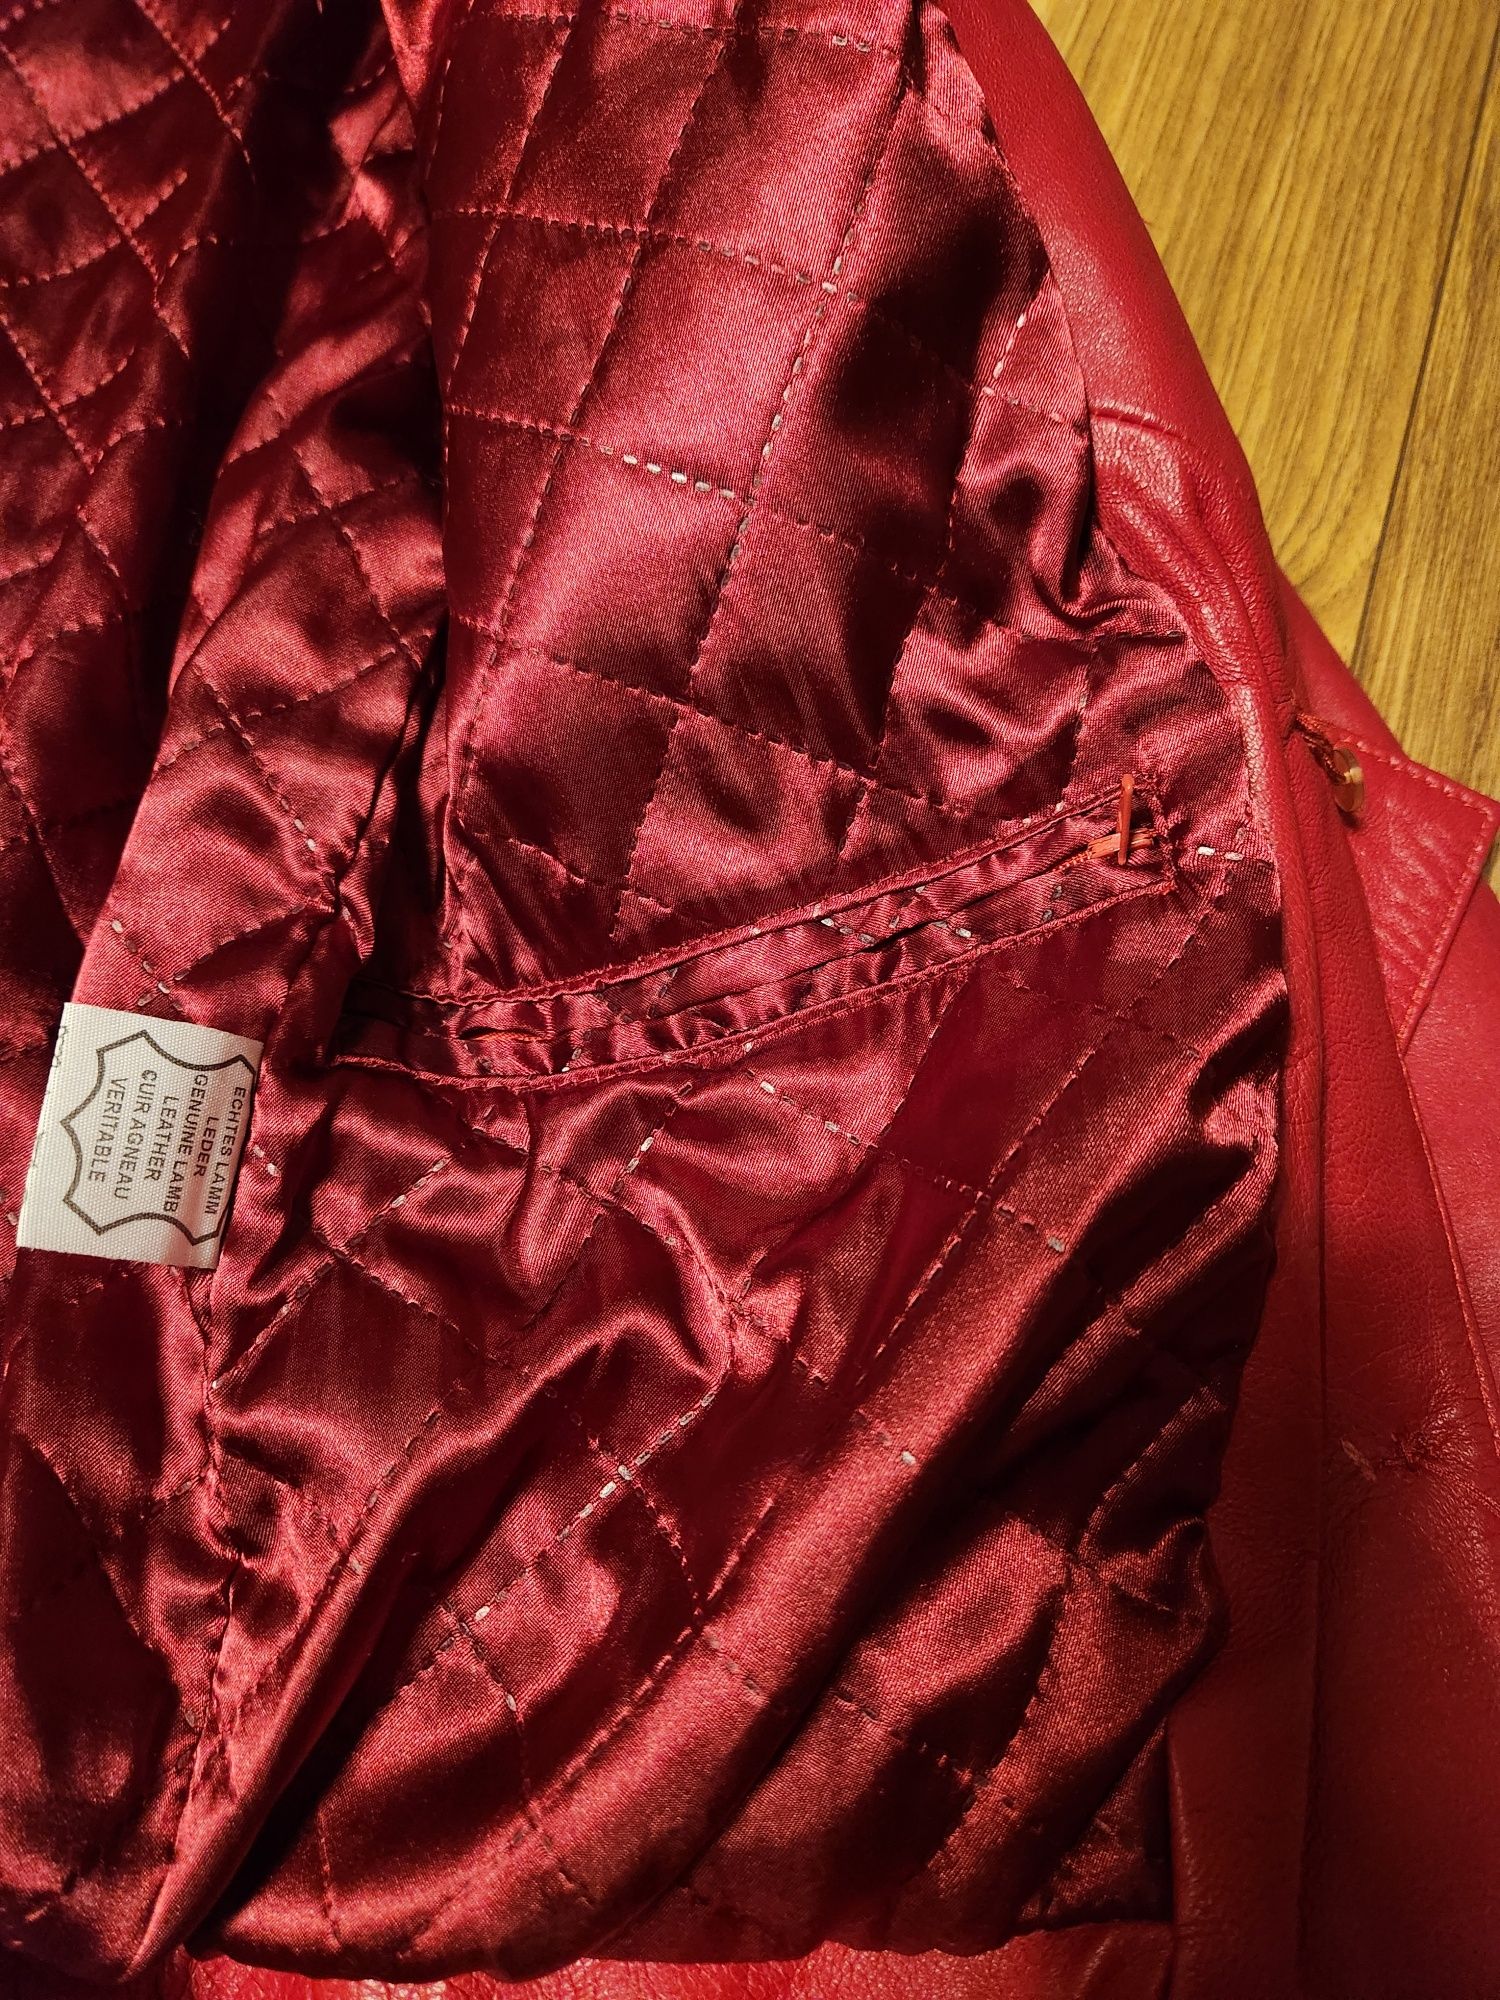 Дамско манто Zara, червено яке кожа, палто Bershka